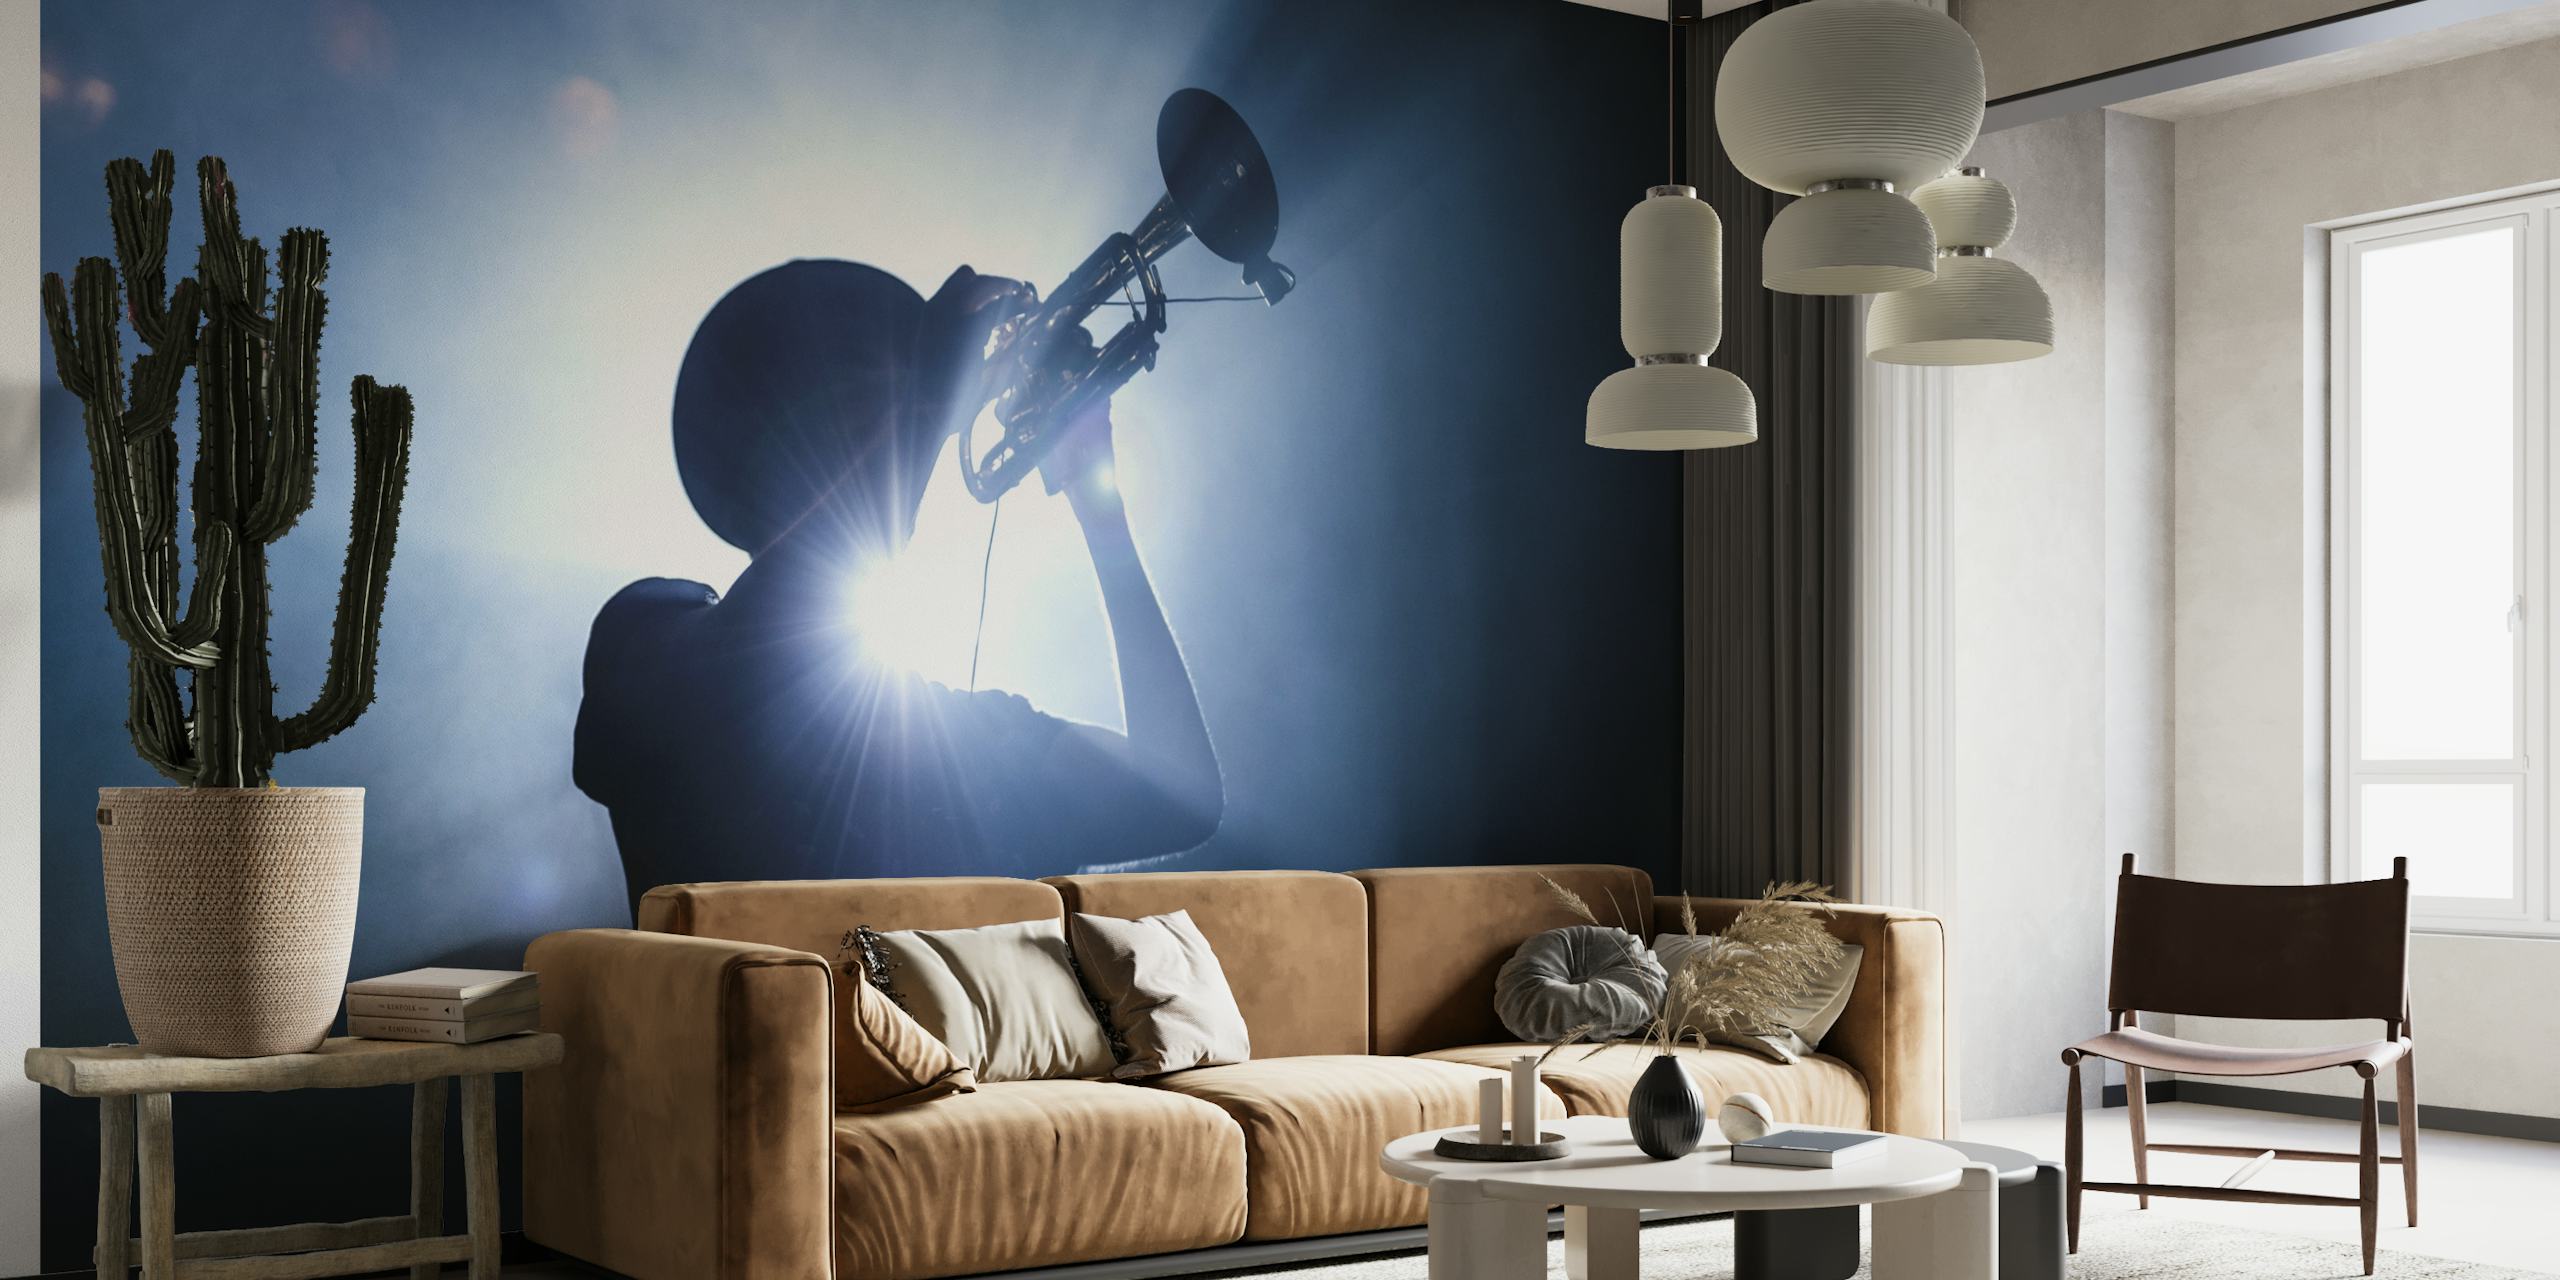 Silhouette d'un trompettiste sur un fond maussade et éclairé, créant une image murale imposante.